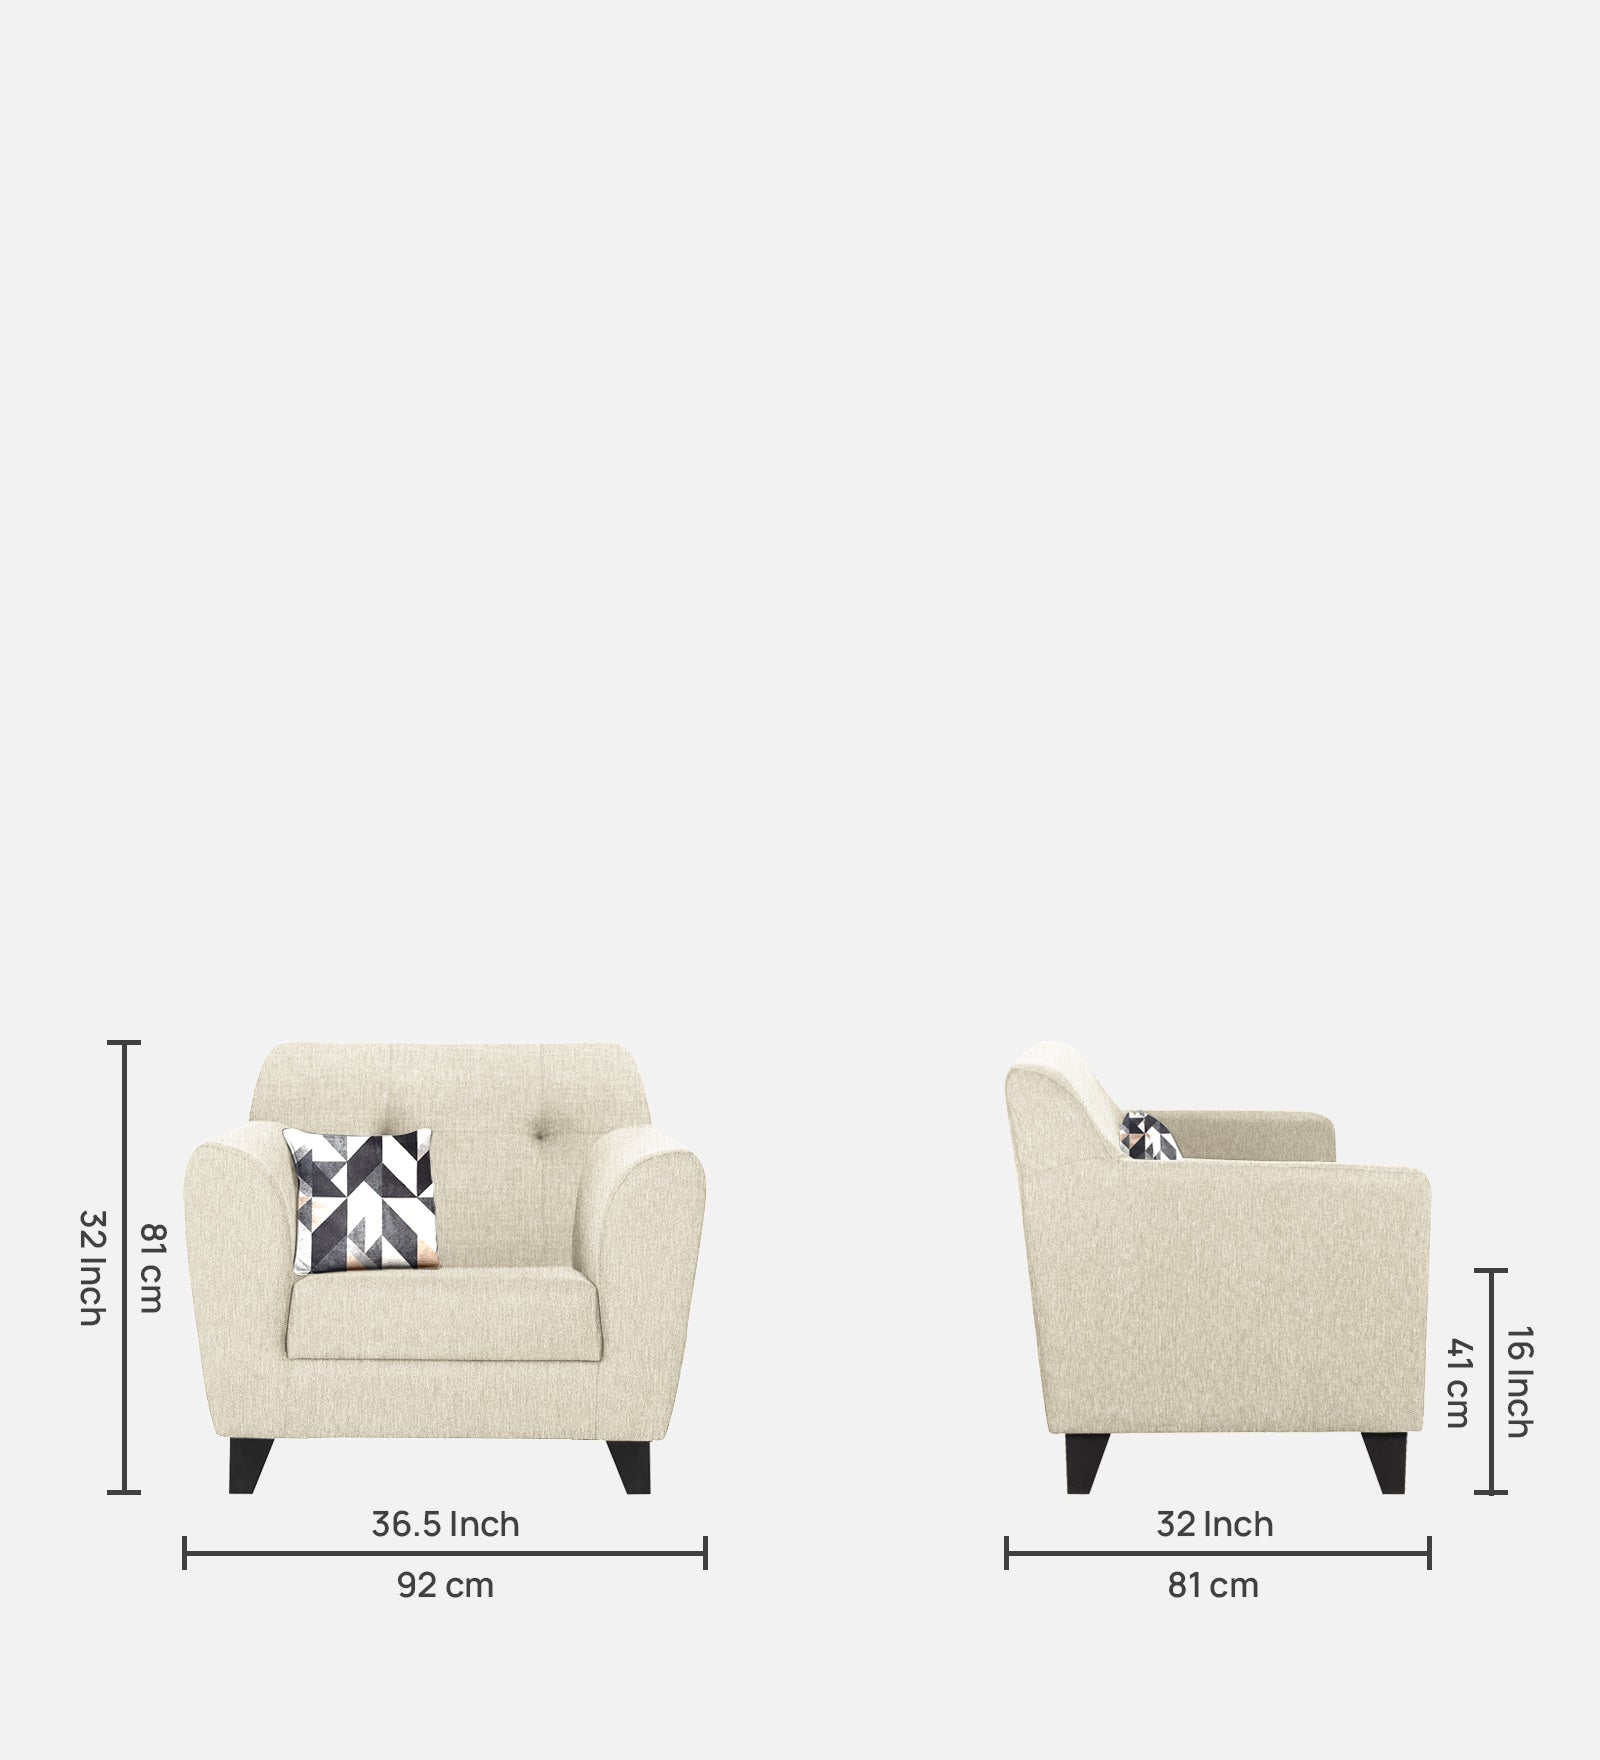 Melaan Fabric 1 Seater Sofa In Ivory cream Colour